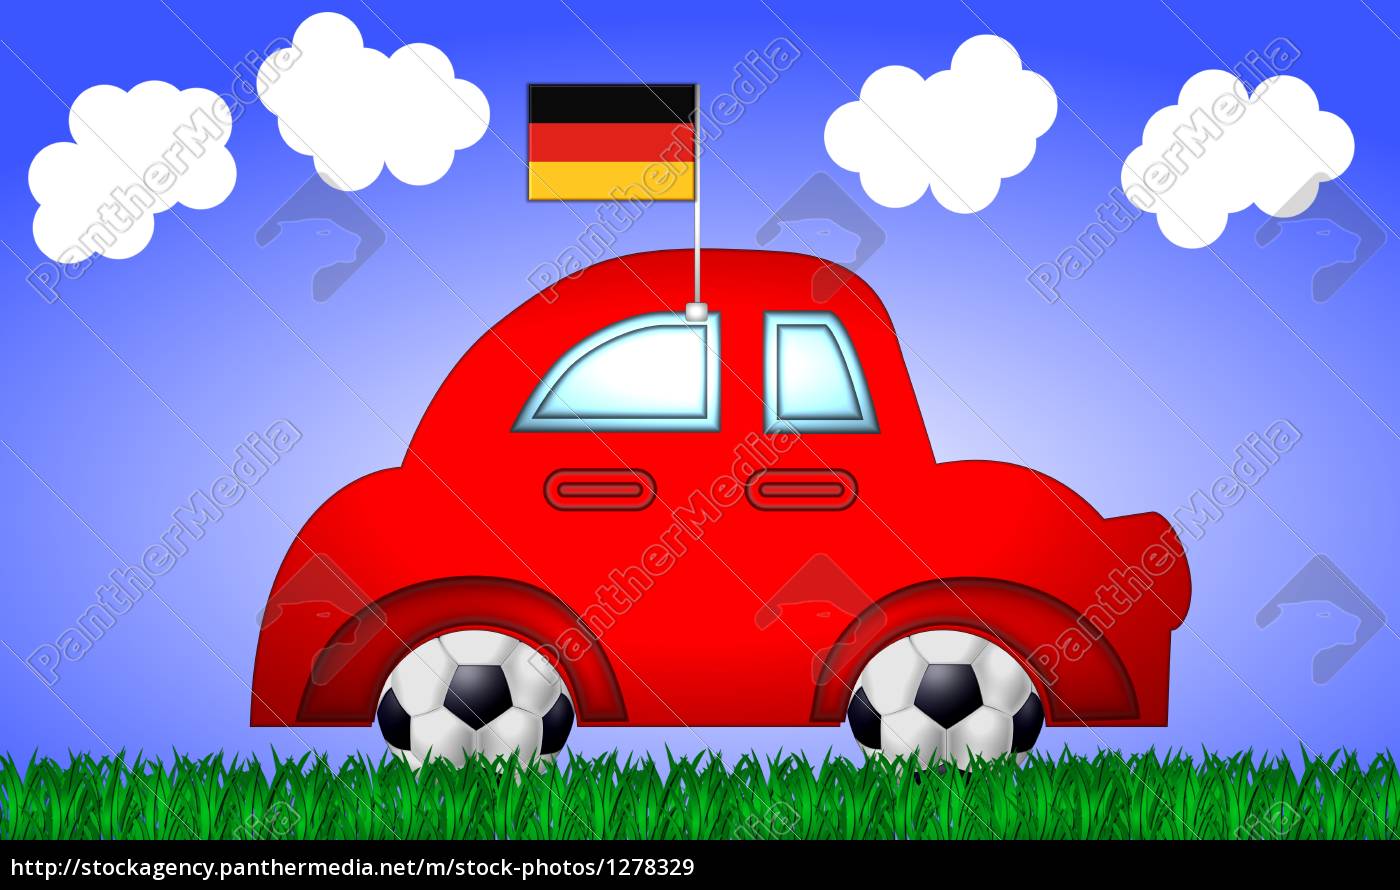 auto mit fan fahne deutschland - Lizenzfreies Bild #1278329